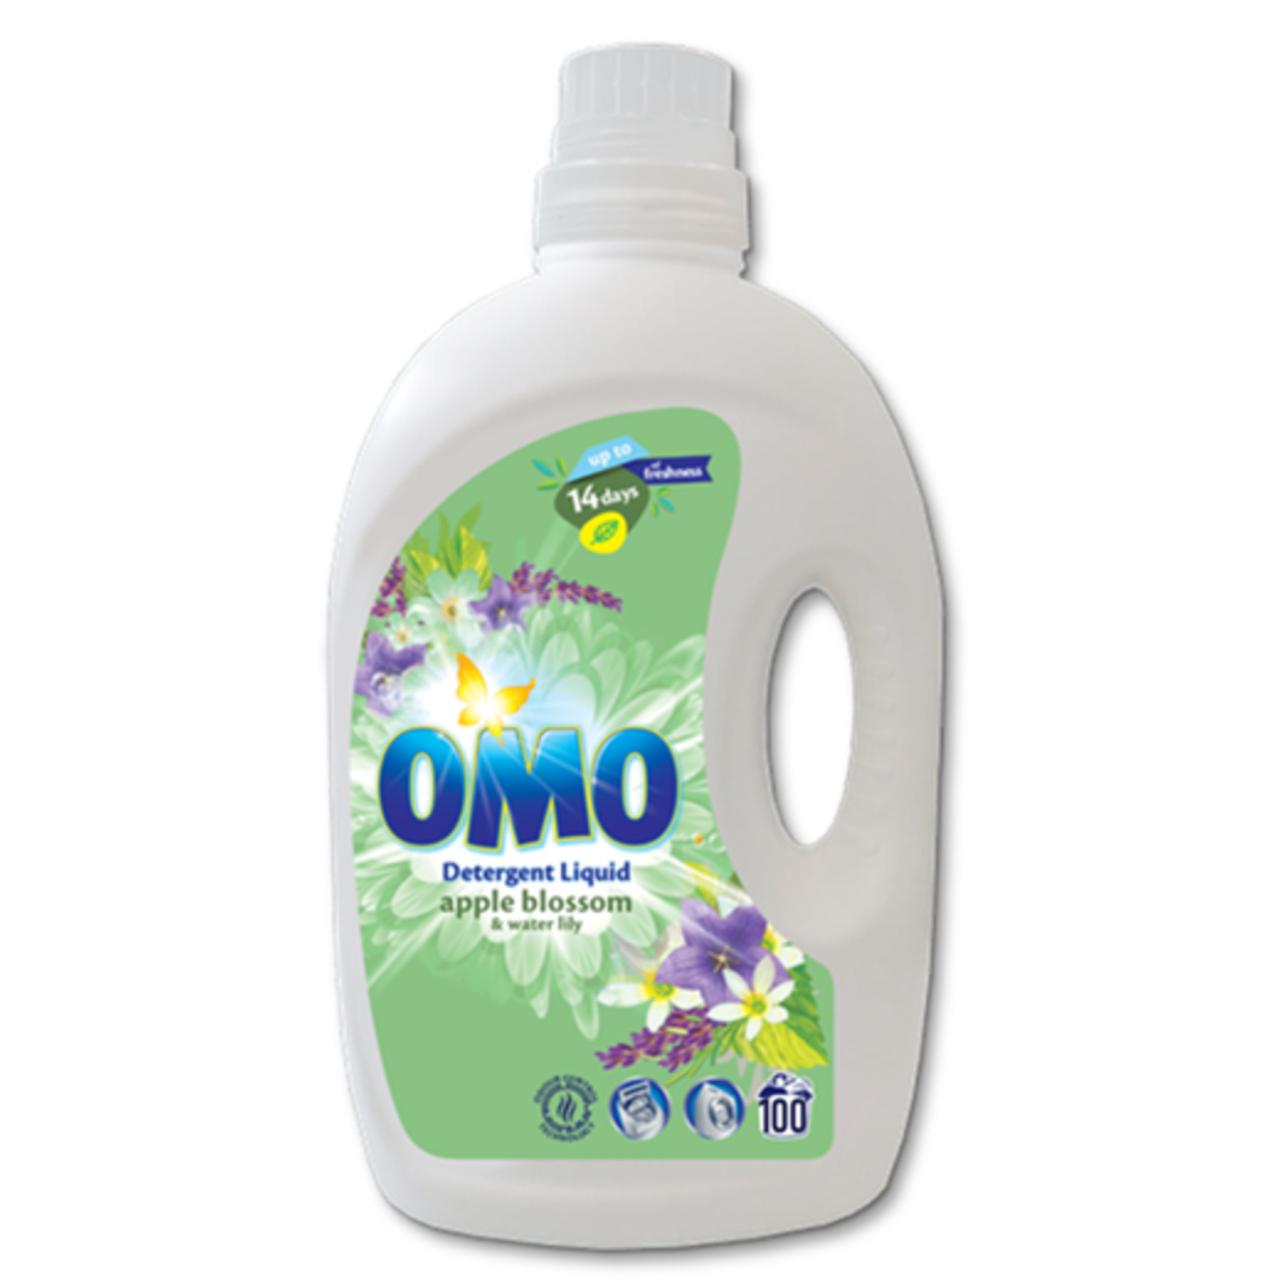 OMO Vaskemiddel/flüssiges Waschmittel Apple Blossom & Water Lily 5 l